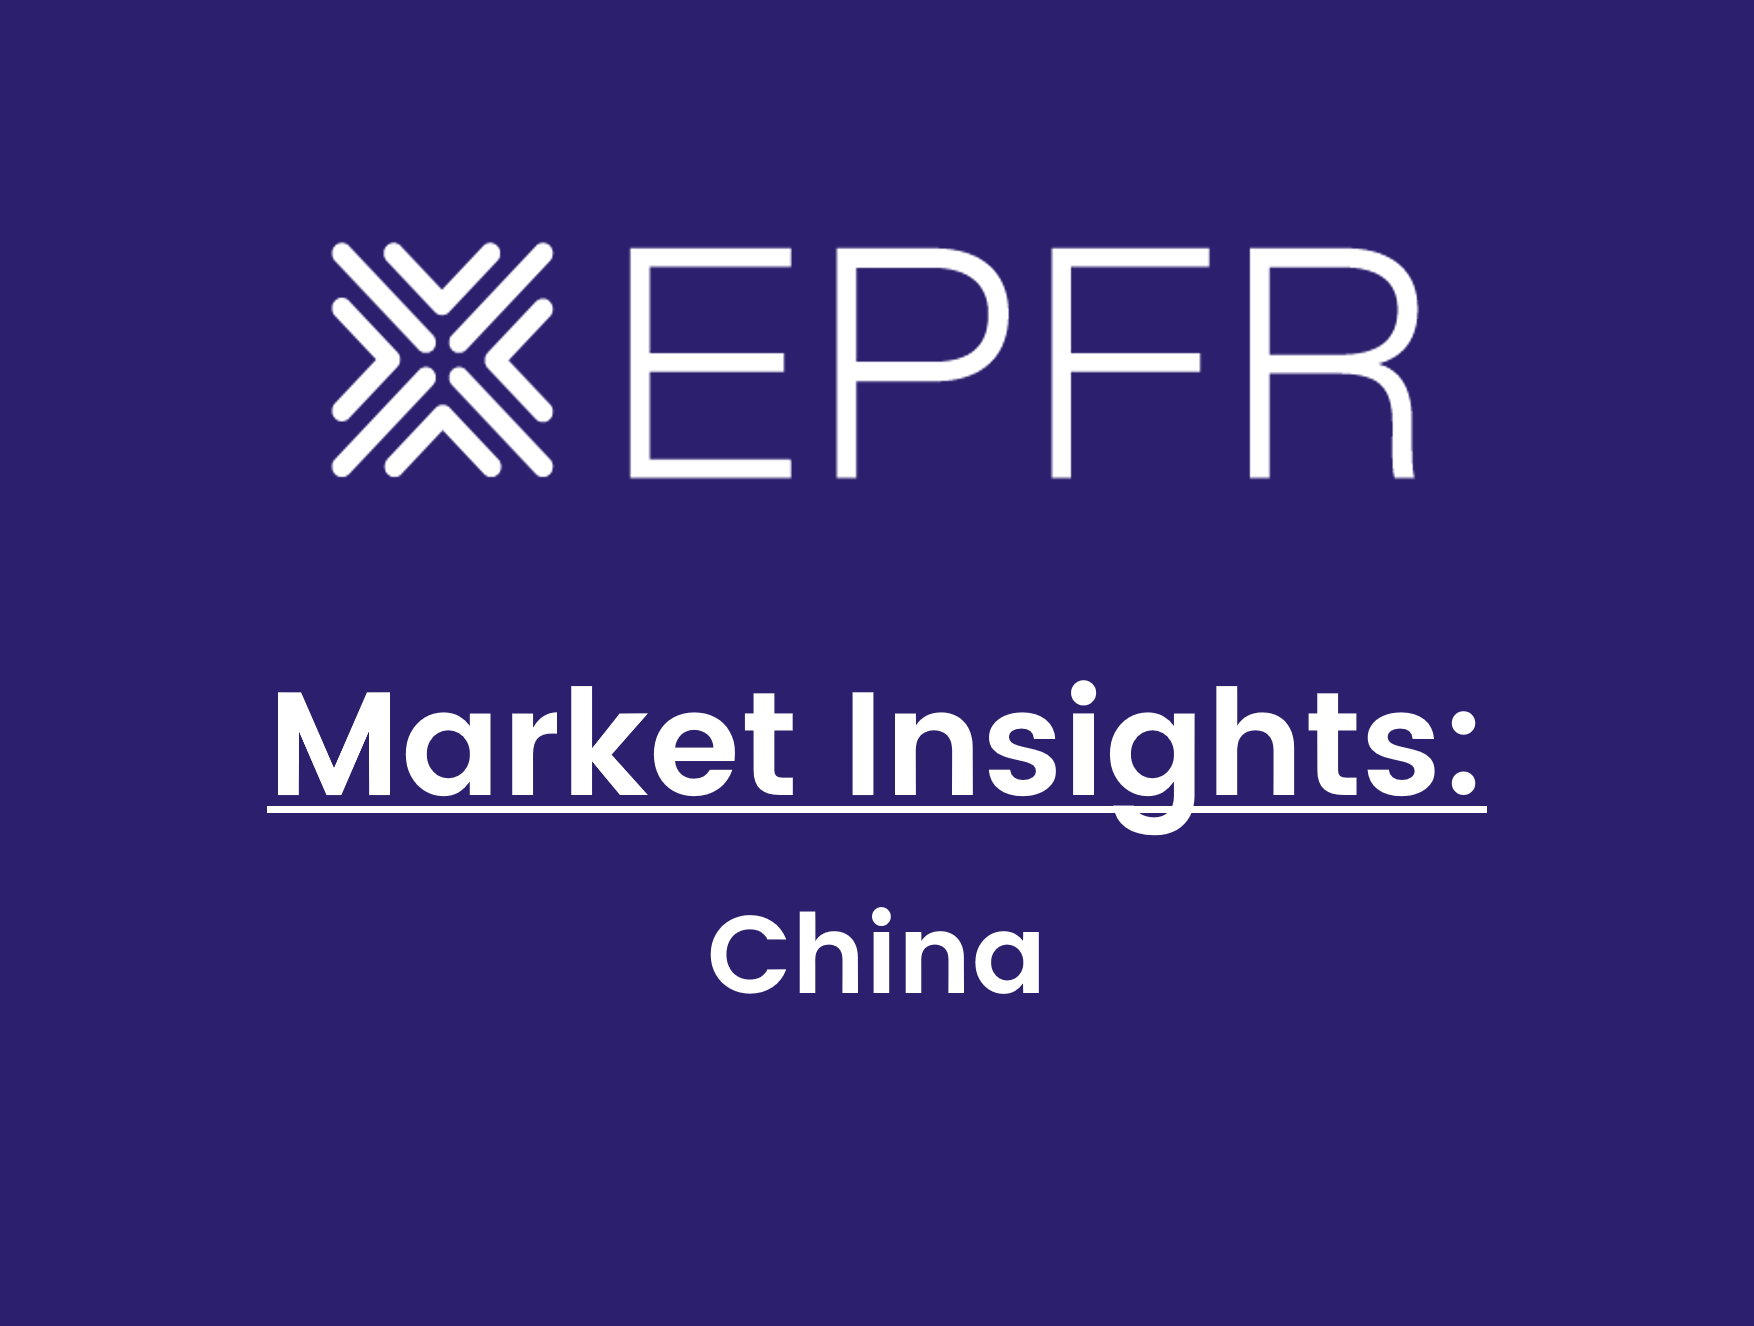 "EPFR Market Insights: China"